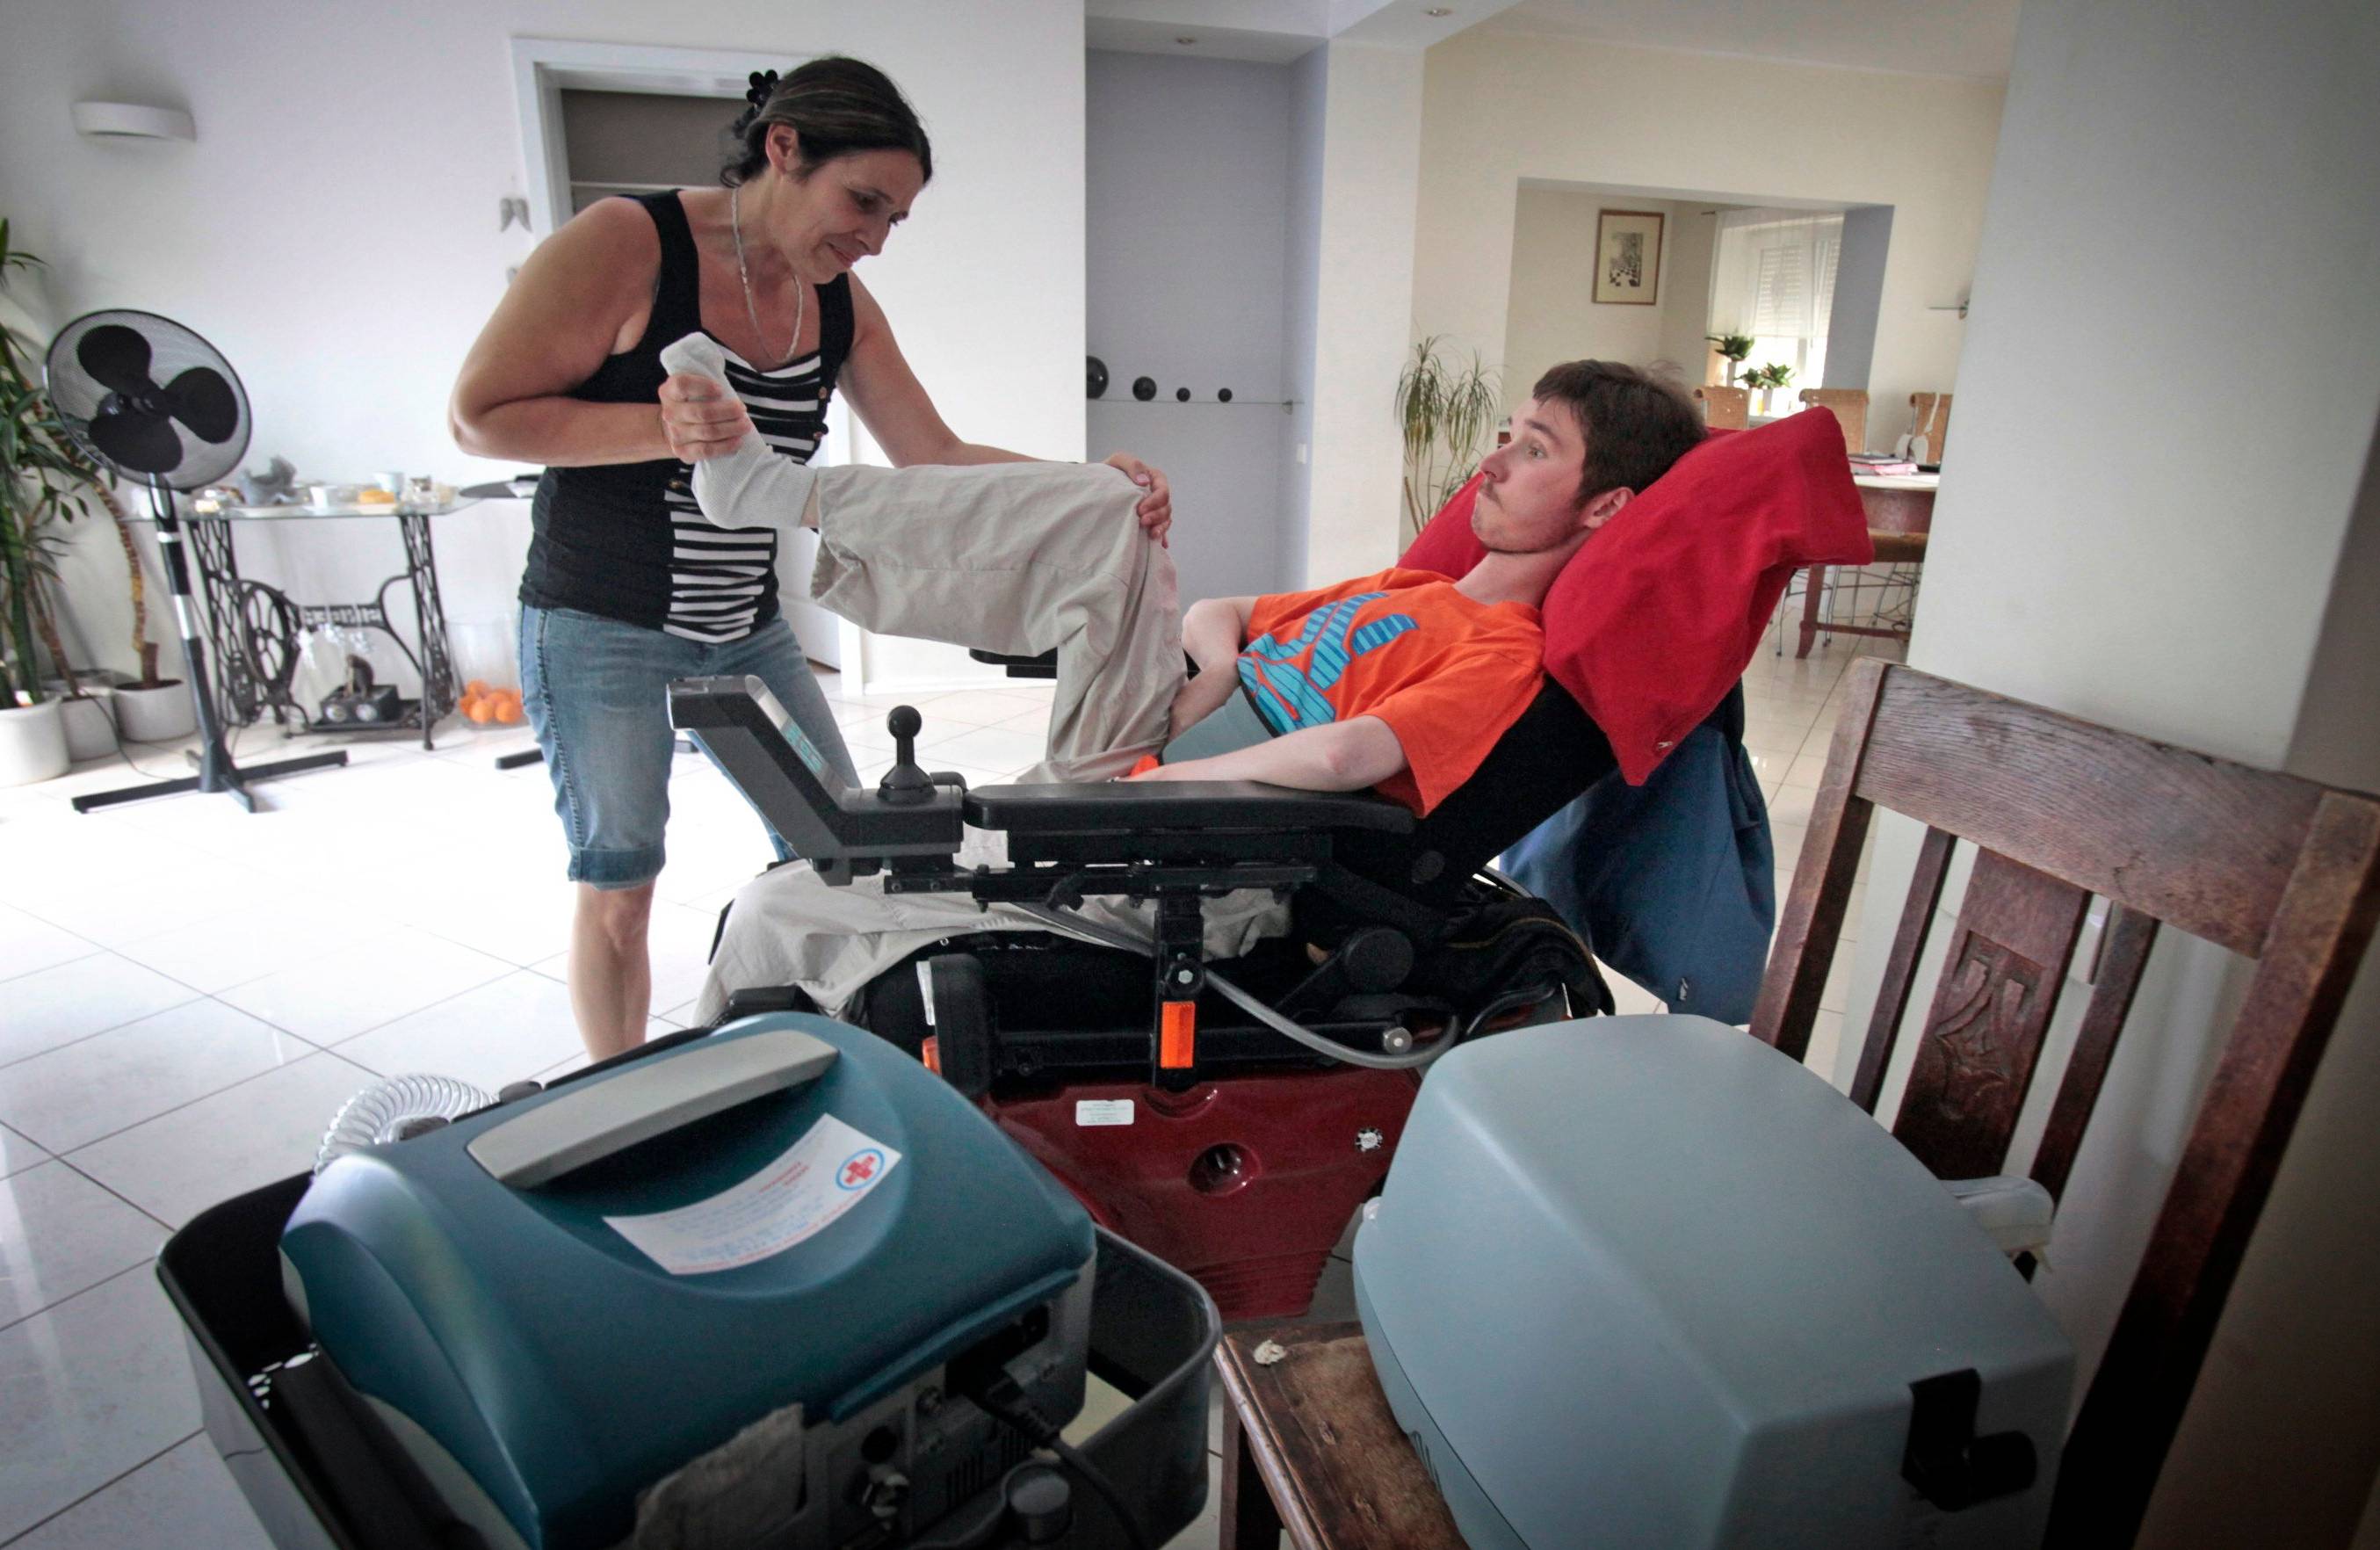 Rehabilitacja osoby z niepełnosprawnością. Obok wózka stoją specjalistyczne urzadzenia